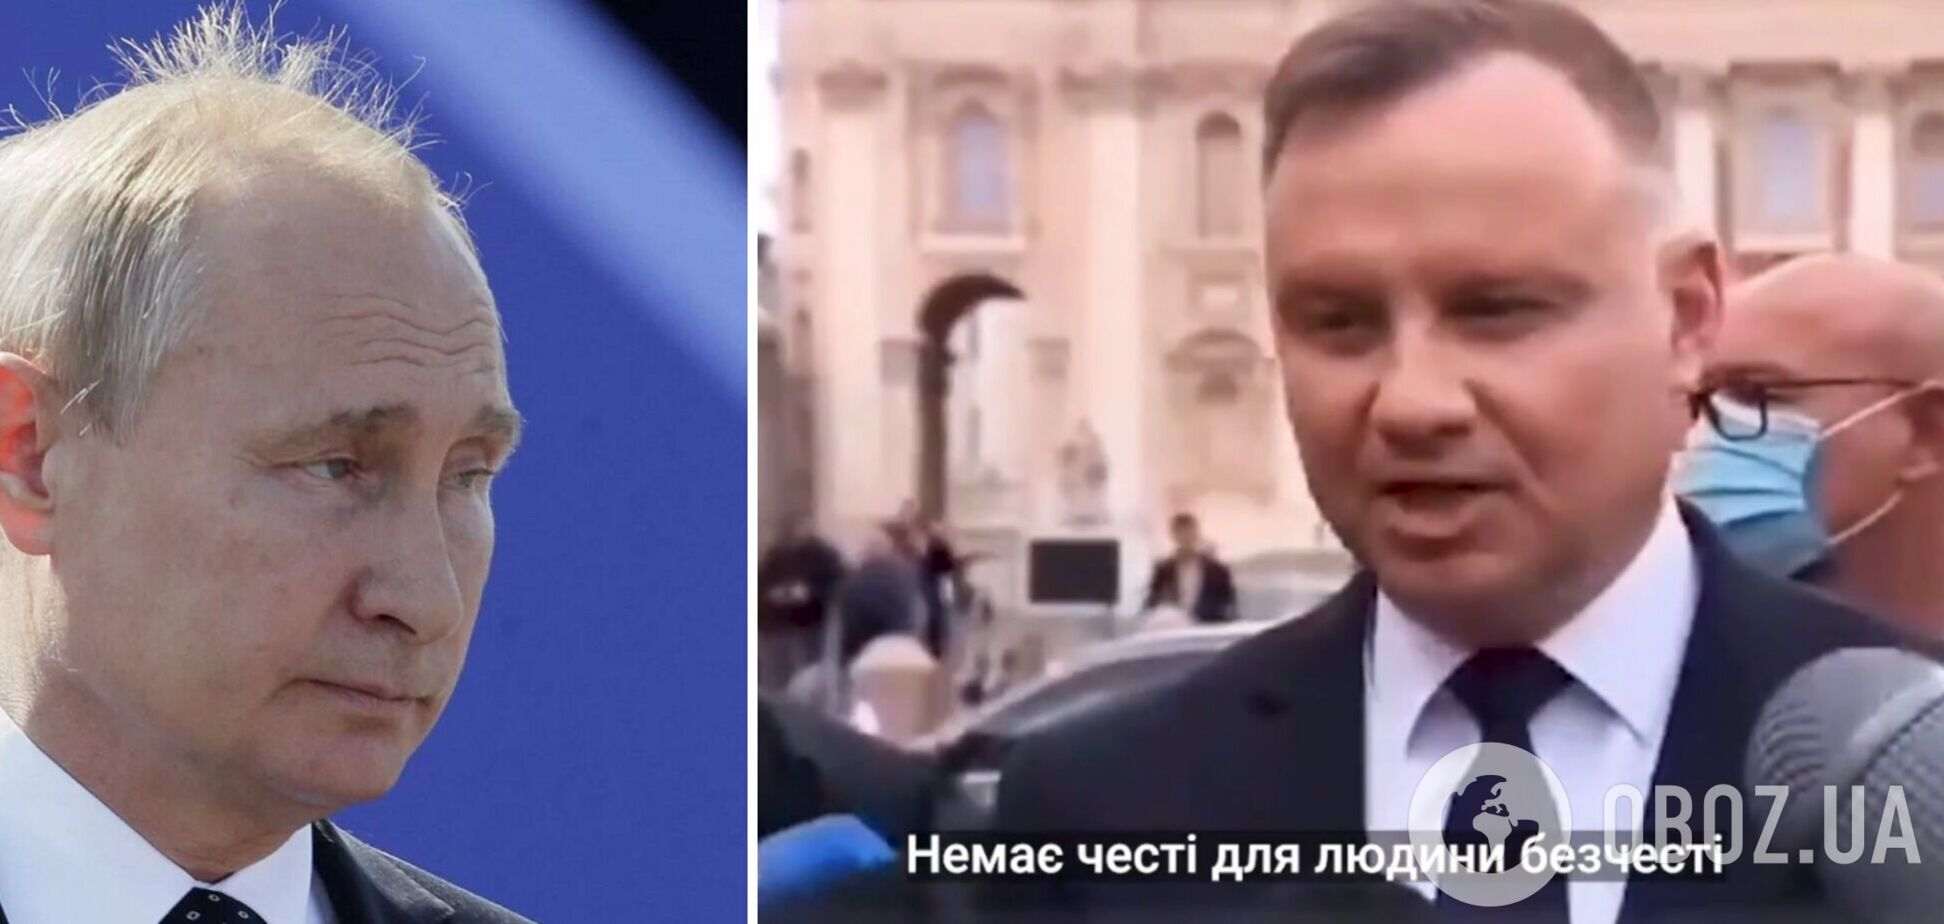 'Нет чести для человека без чести': Дуда резко ответил о судьбе Путина, украинцы отреагировали. Видео